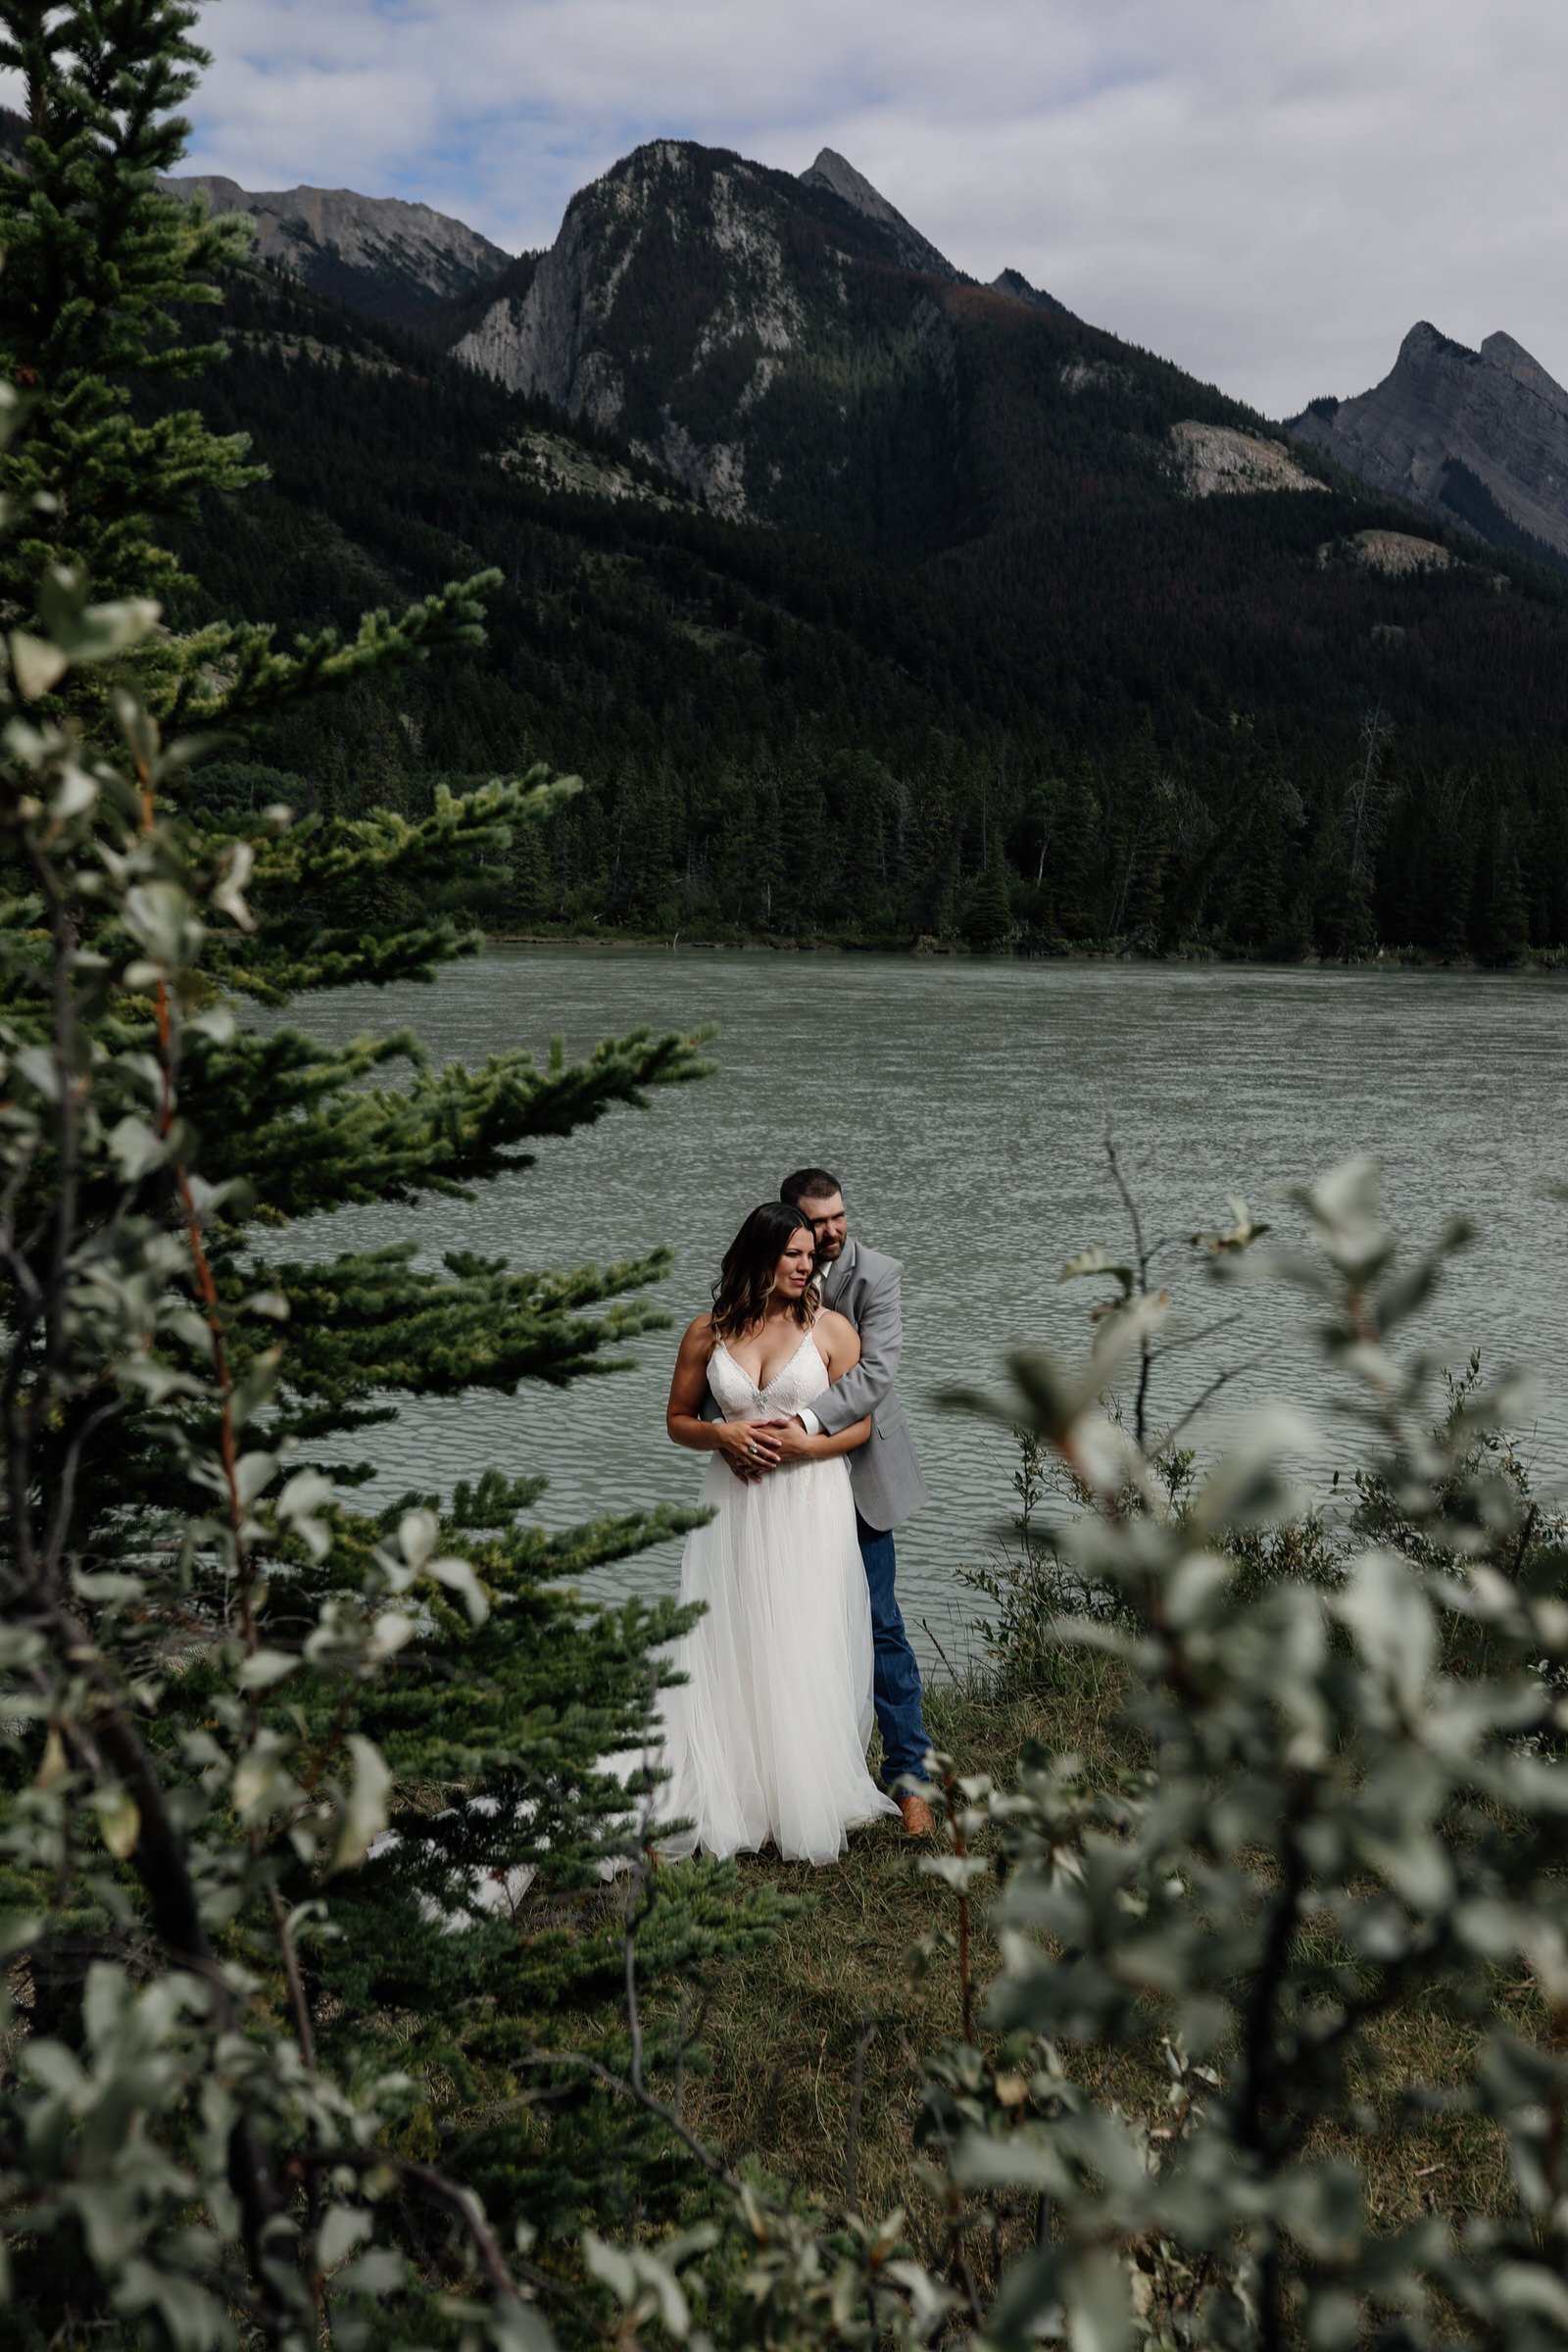 outdoor elopement wedding venues in jasper national park